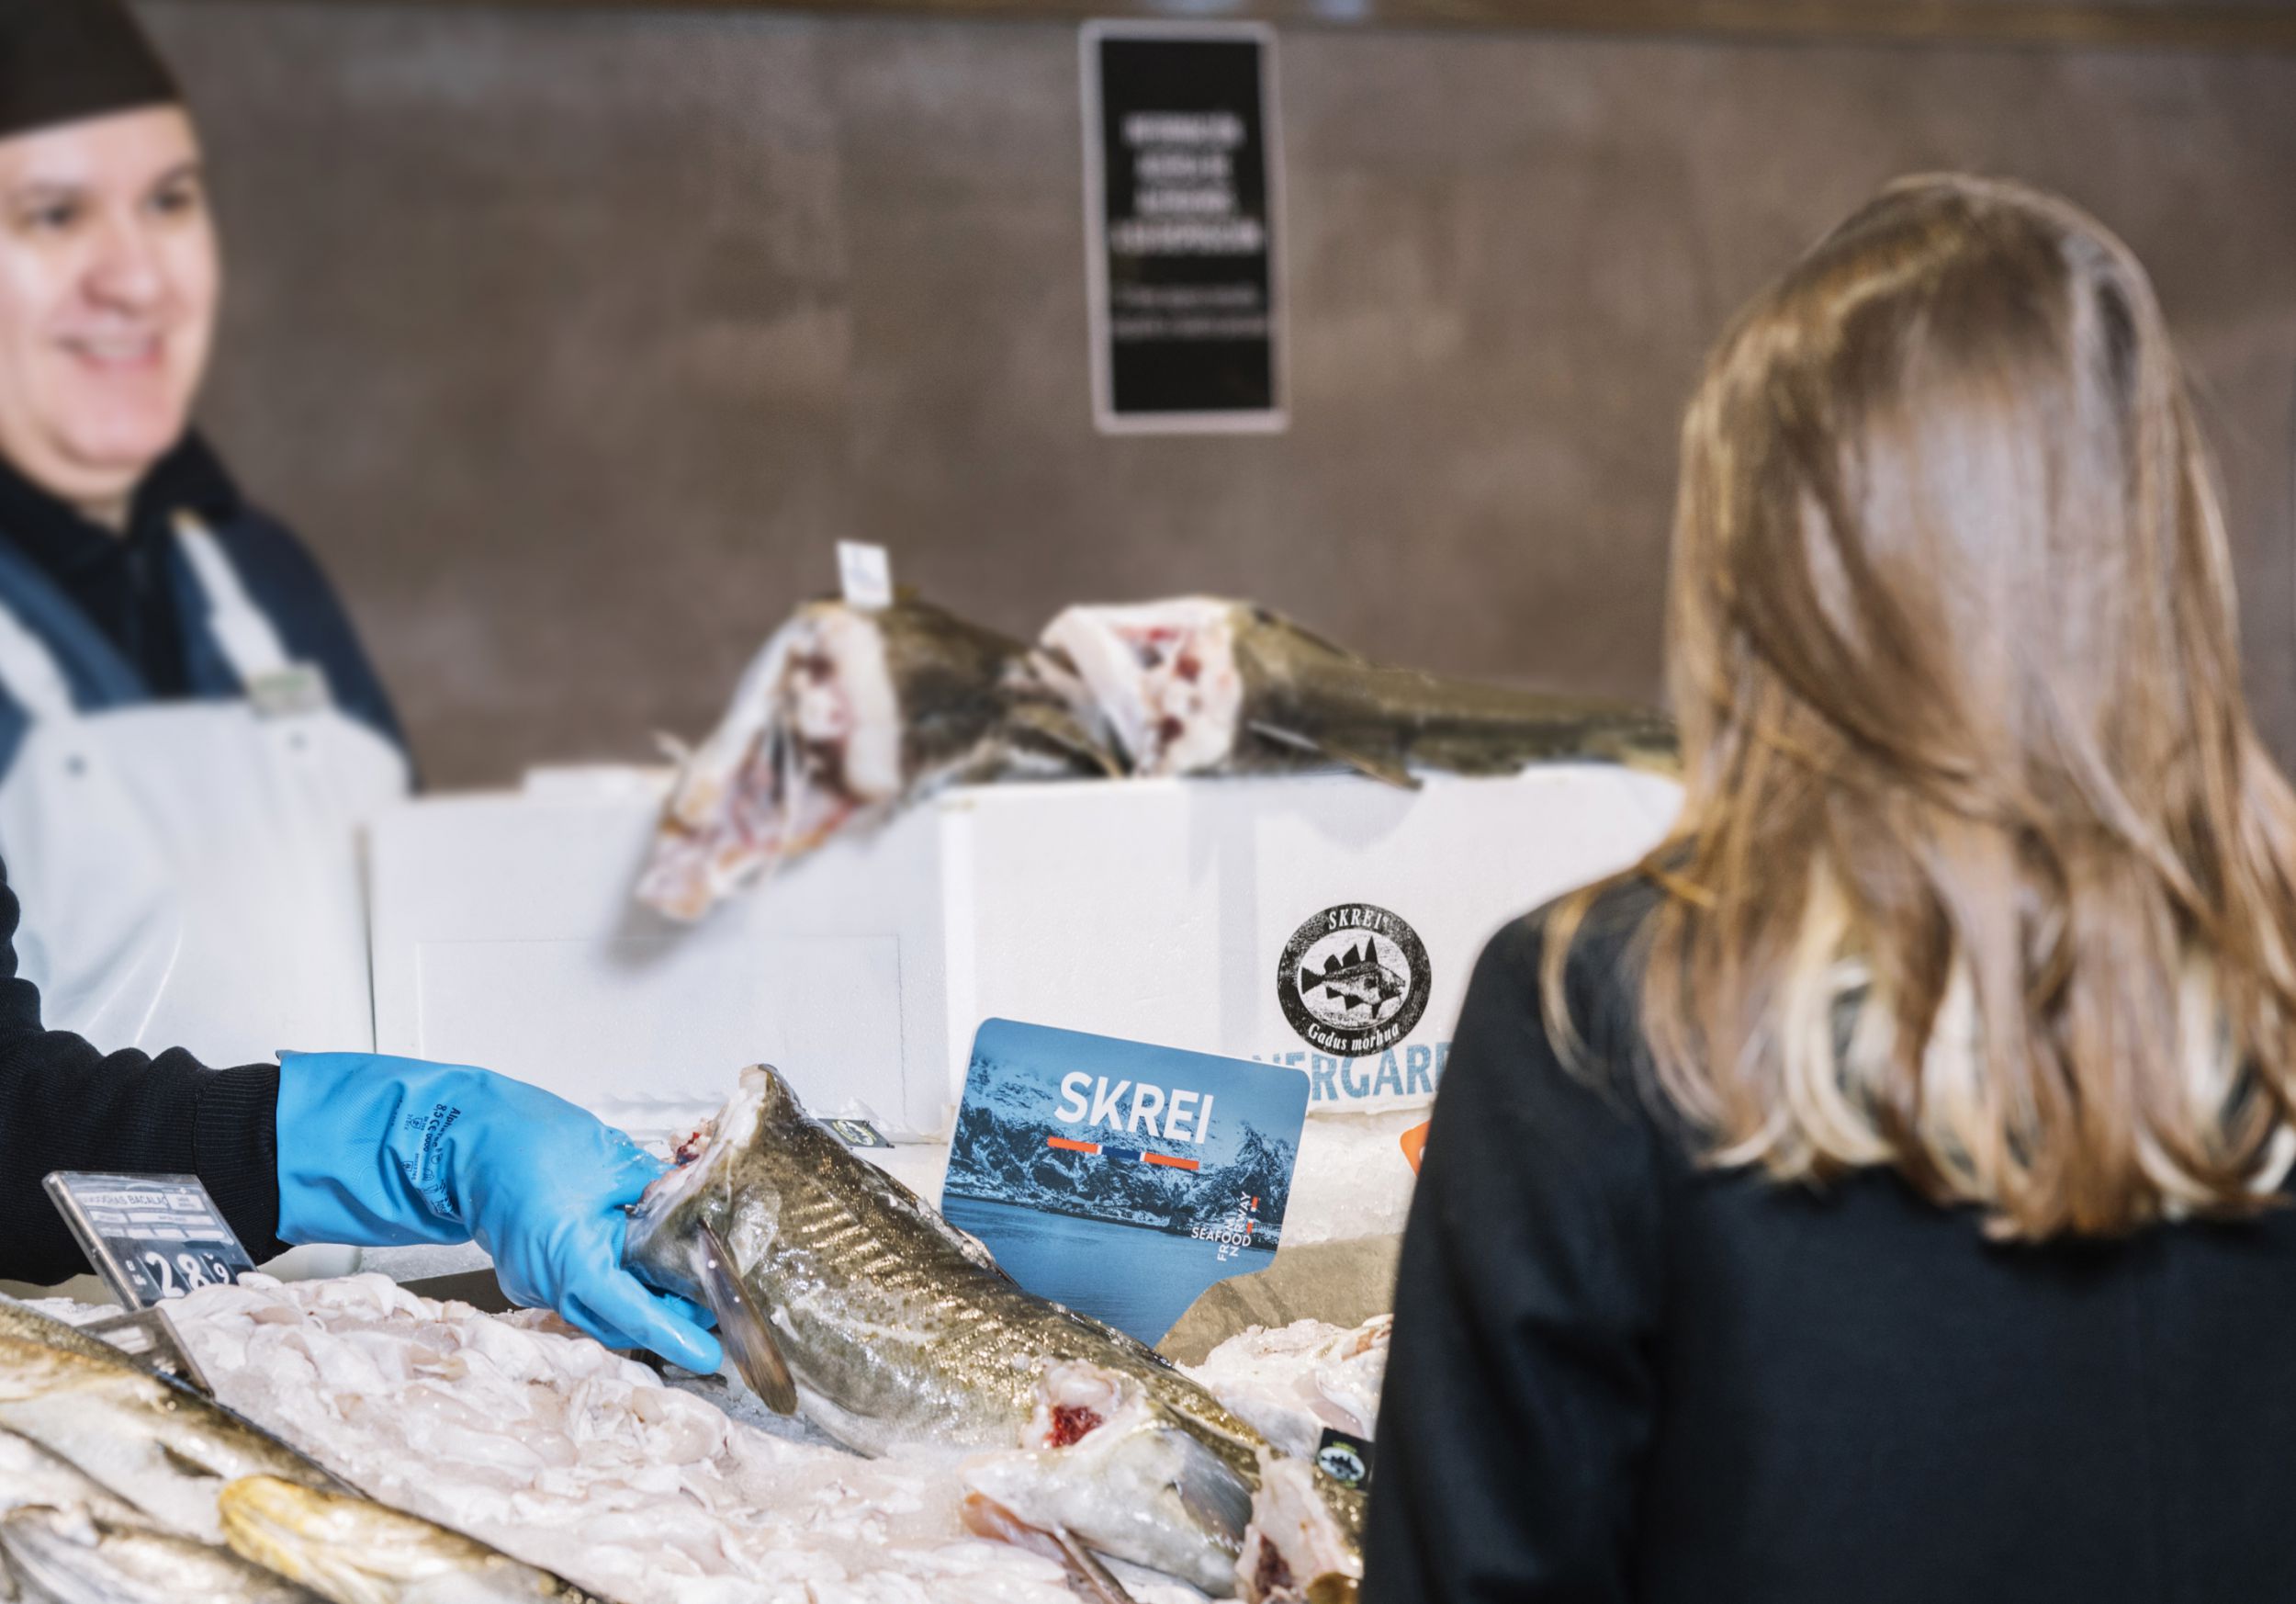 El Corte Inglés trae en exclusiva el Skrei noruego, el bacalao gourmet más fresco y sostenible del mundo